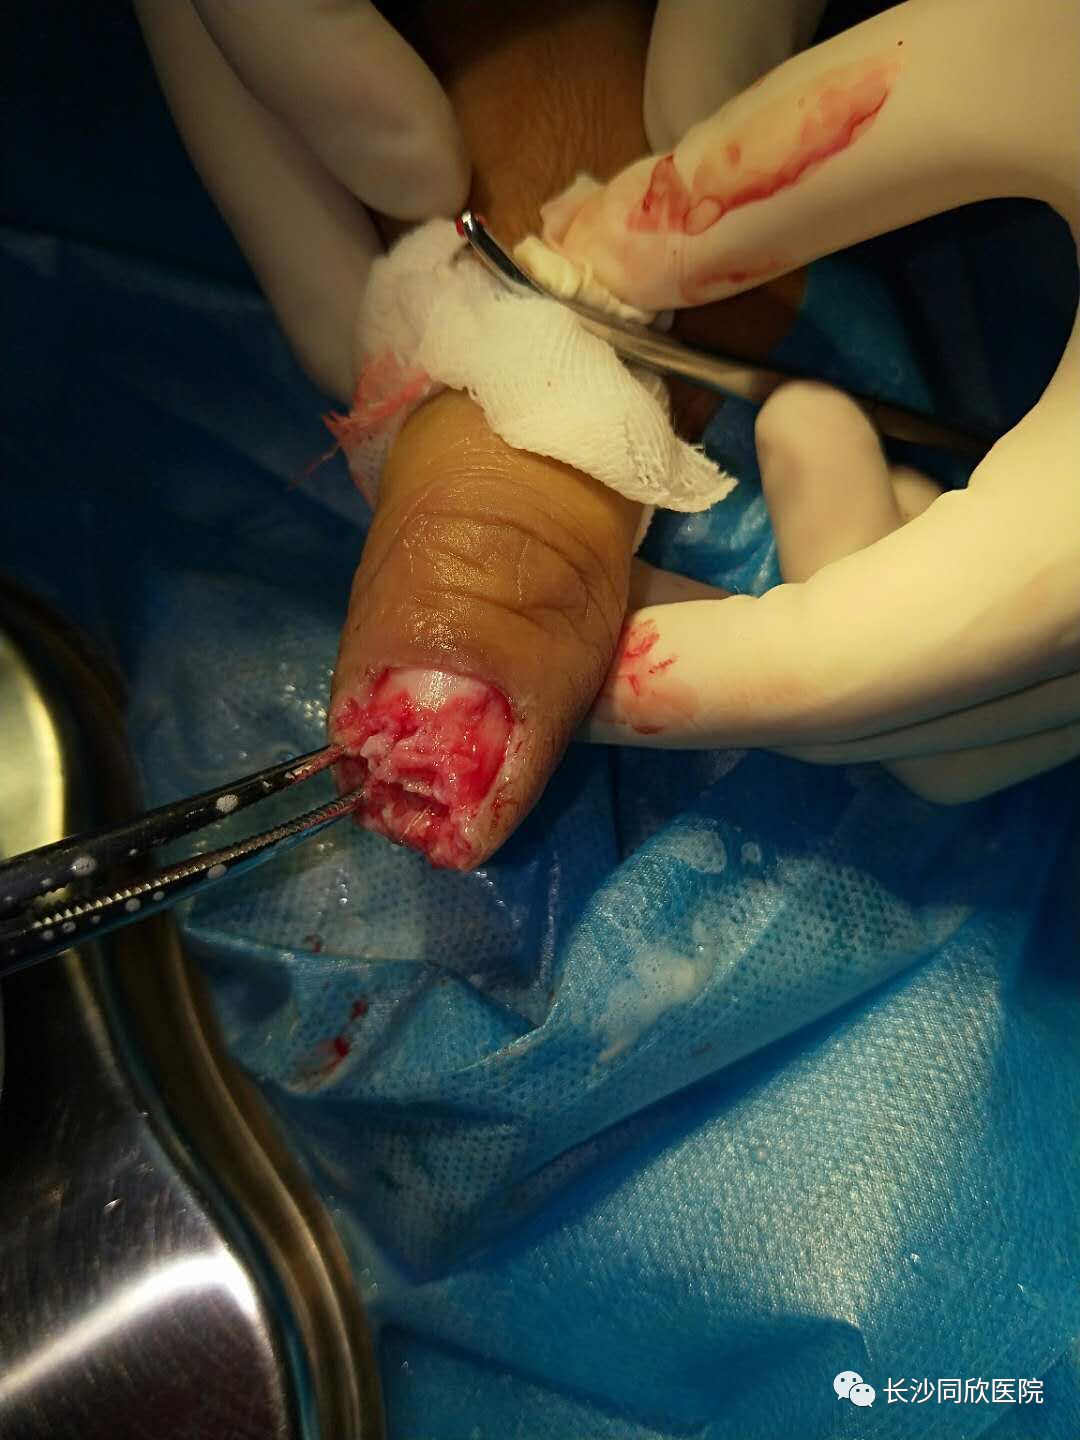 手术成功后,伤者可保留患指基本长度及功能,目前,该患者皮瓣血运良好